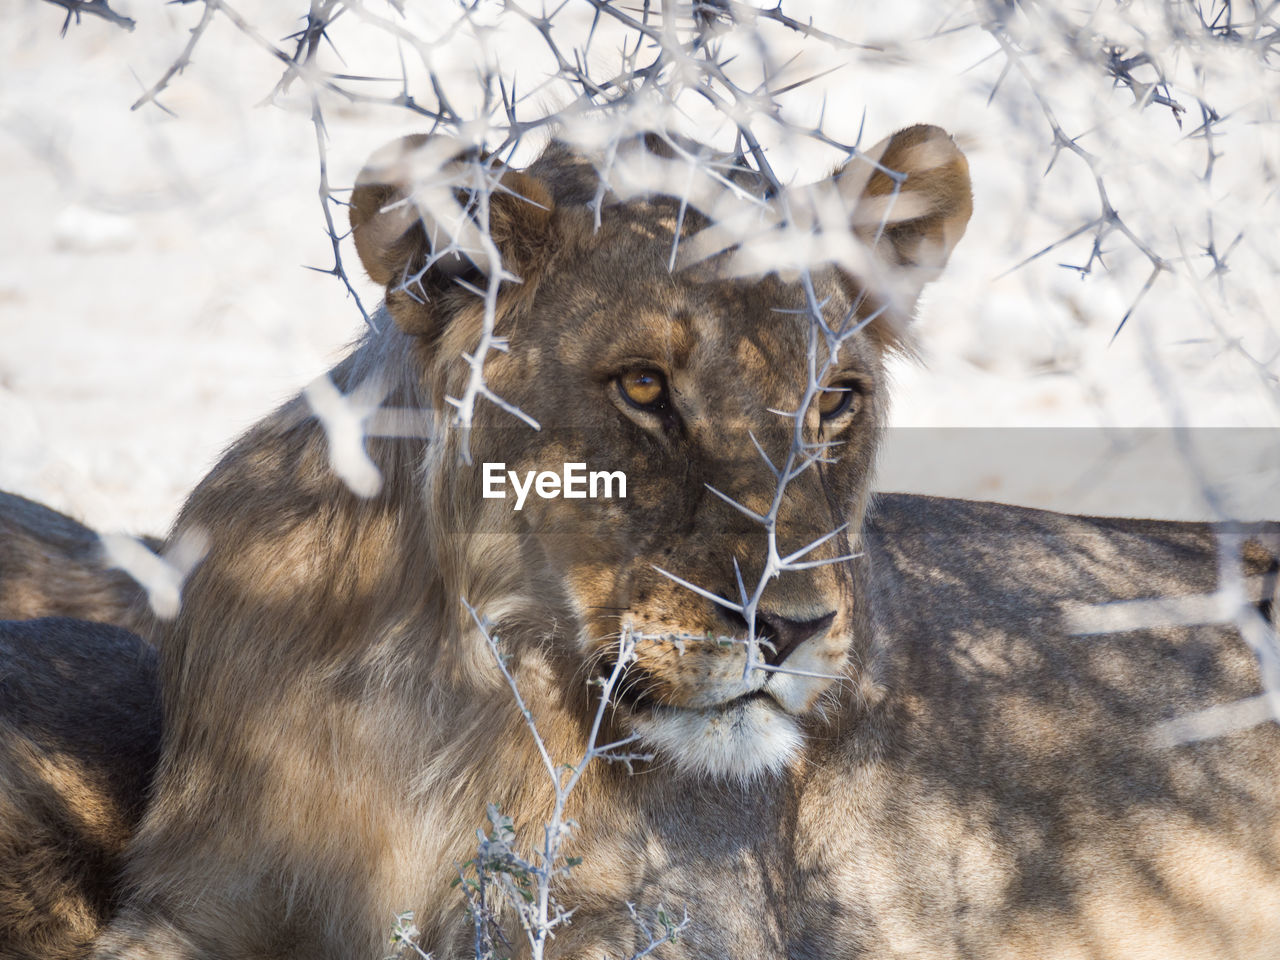 Portrait of female lion under thorny bush in etosha national park, namibia, africa